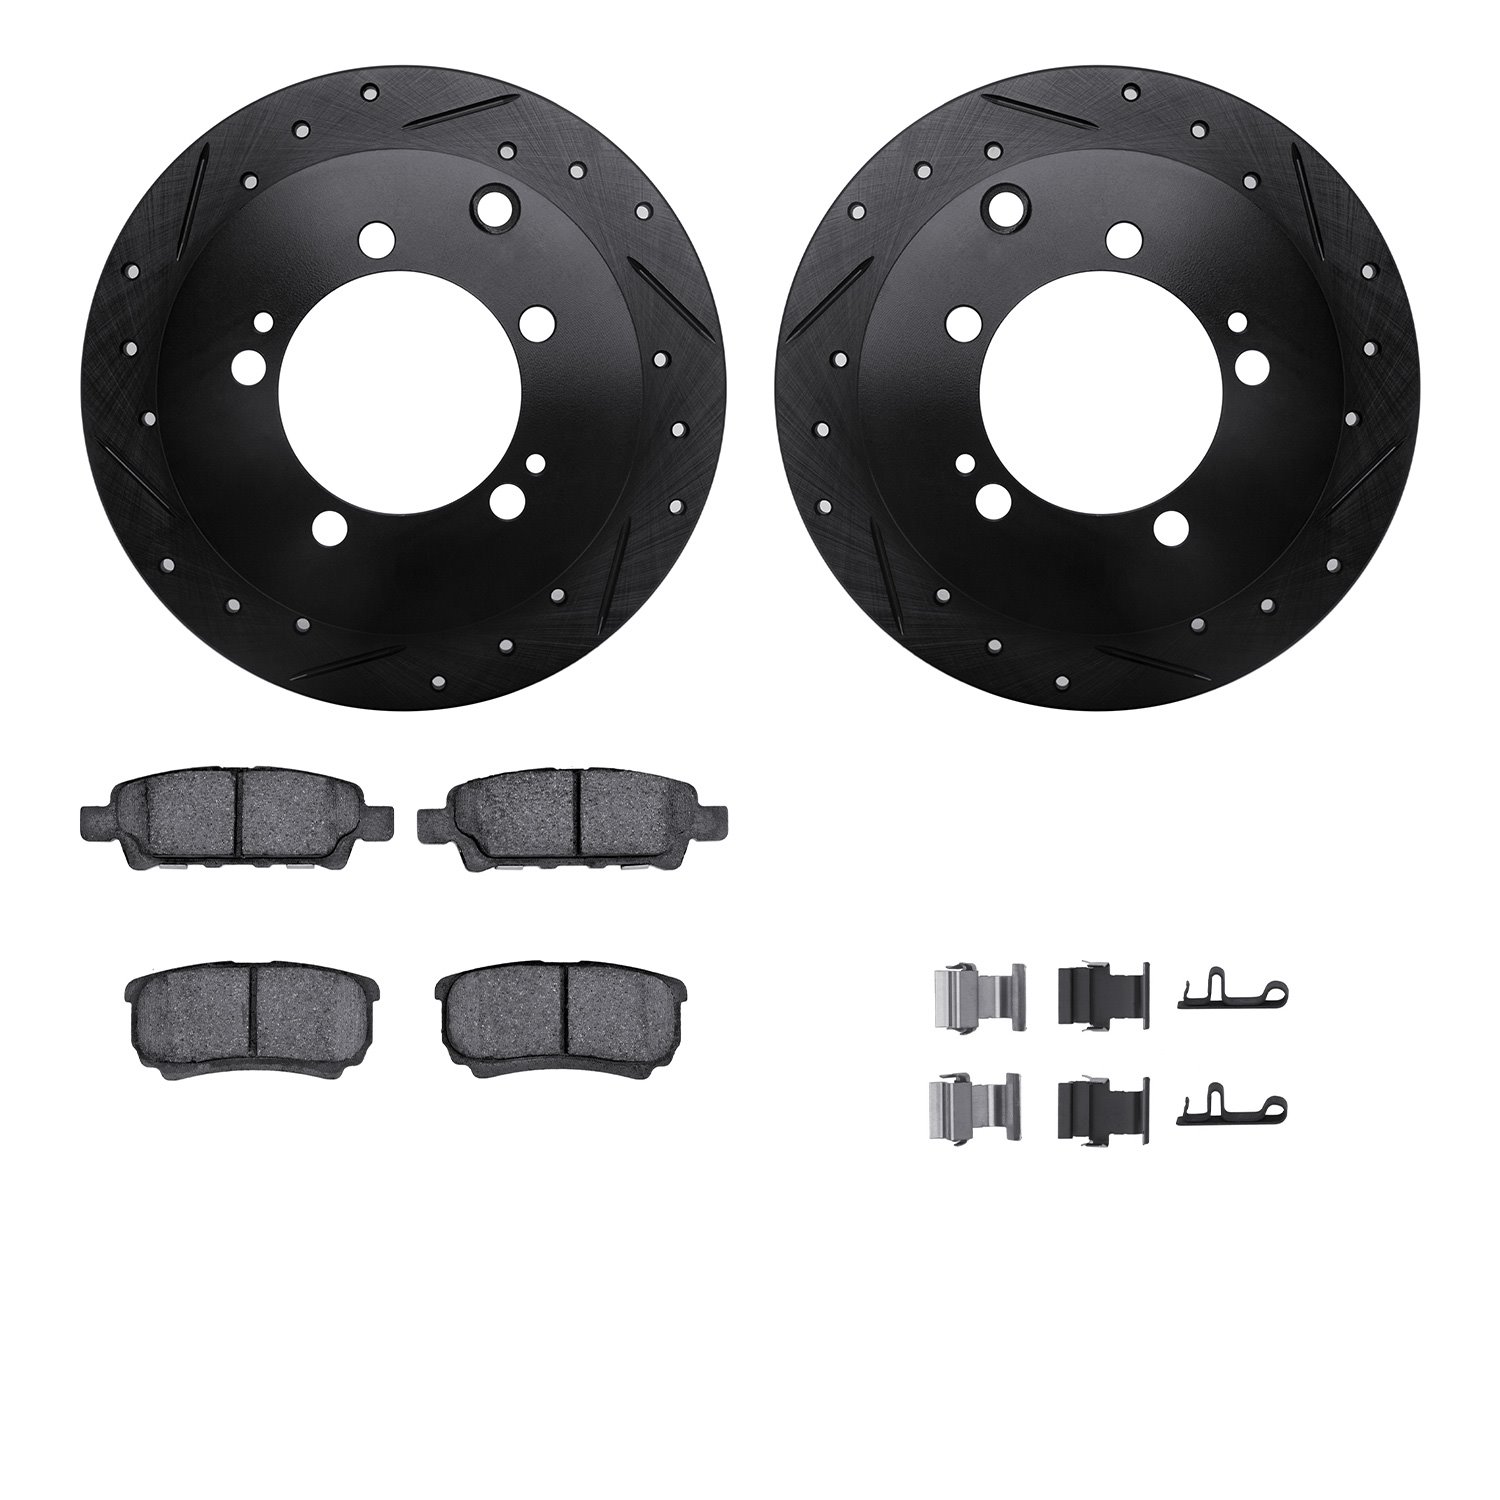 8312-72084 Drilled/Slotted Brake Rotors with 3000-Series Ceramic Brake Pads Kit & Hardware [Black], 2004-2007 Mitsubishi, Positi